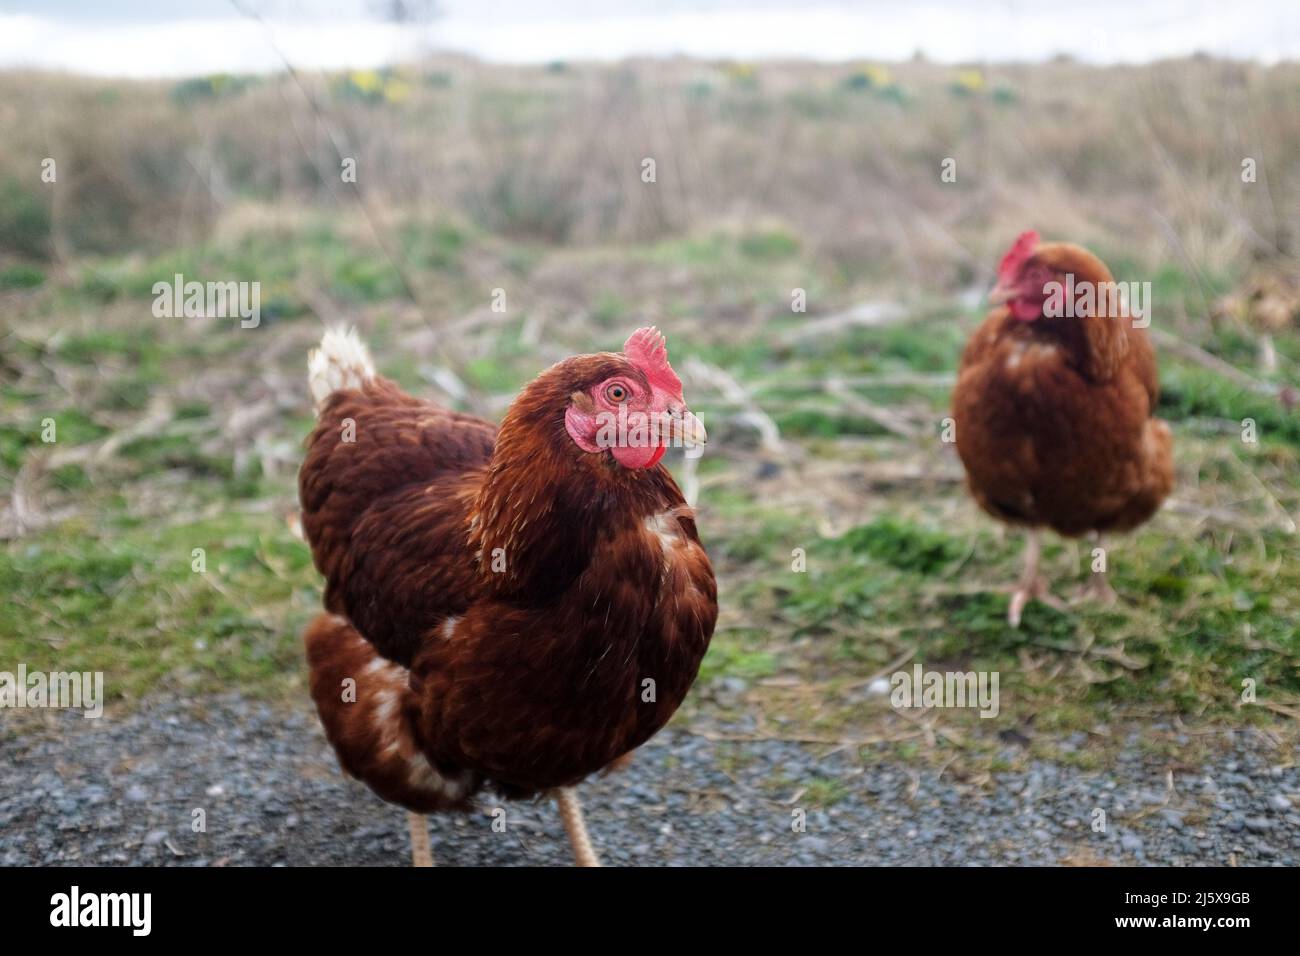 2 galline rosse di colore marrone in una zona rurale Foto Stock